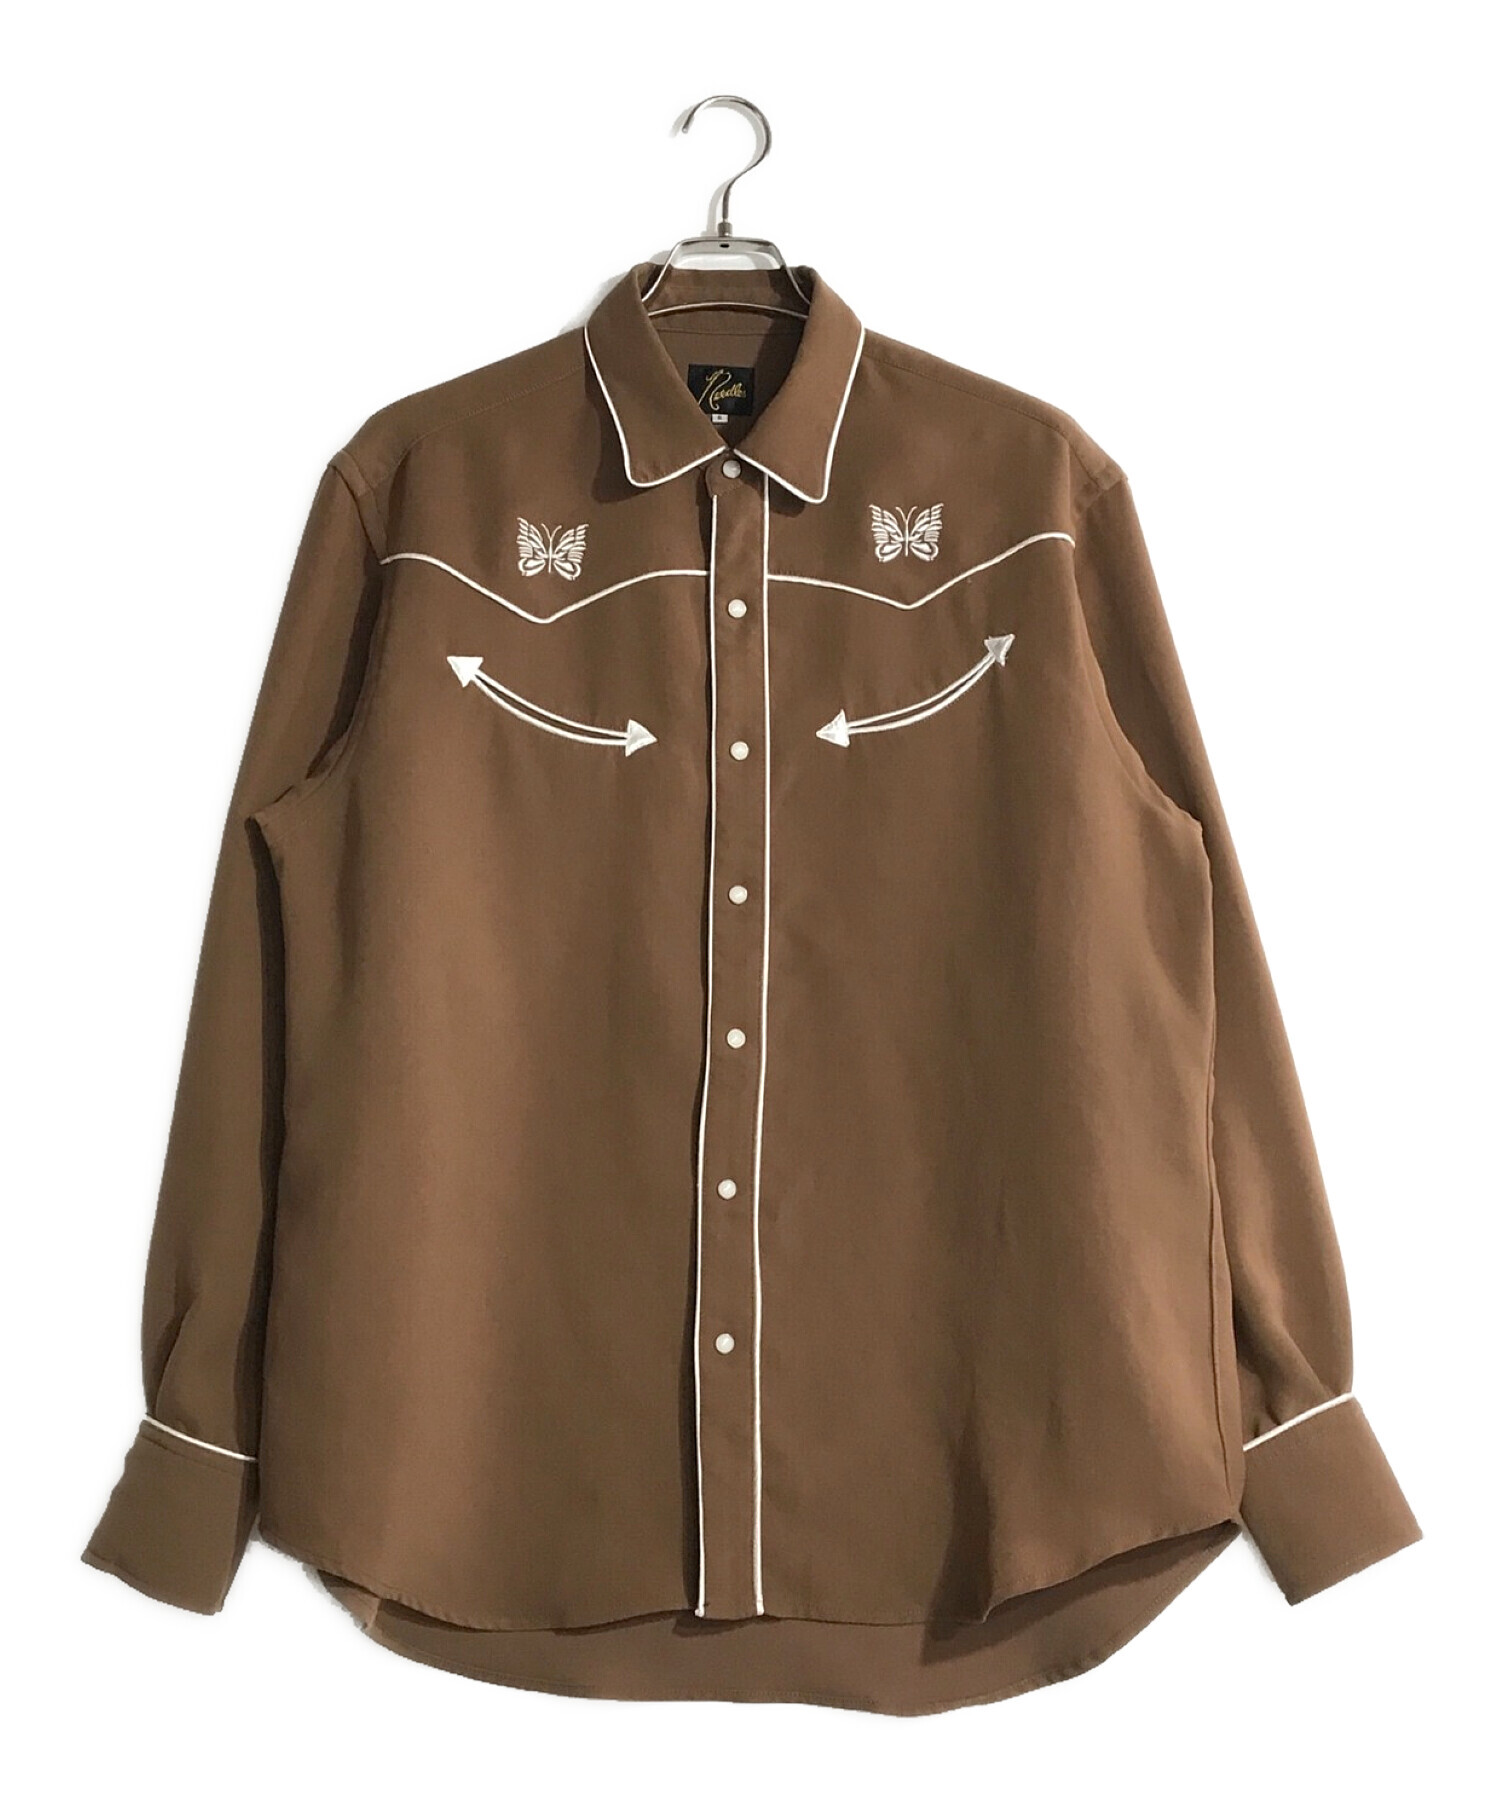 Needles (ニードルス) Embroidered Cowboy Shirt ブラウン×ホワイト サイズ:S